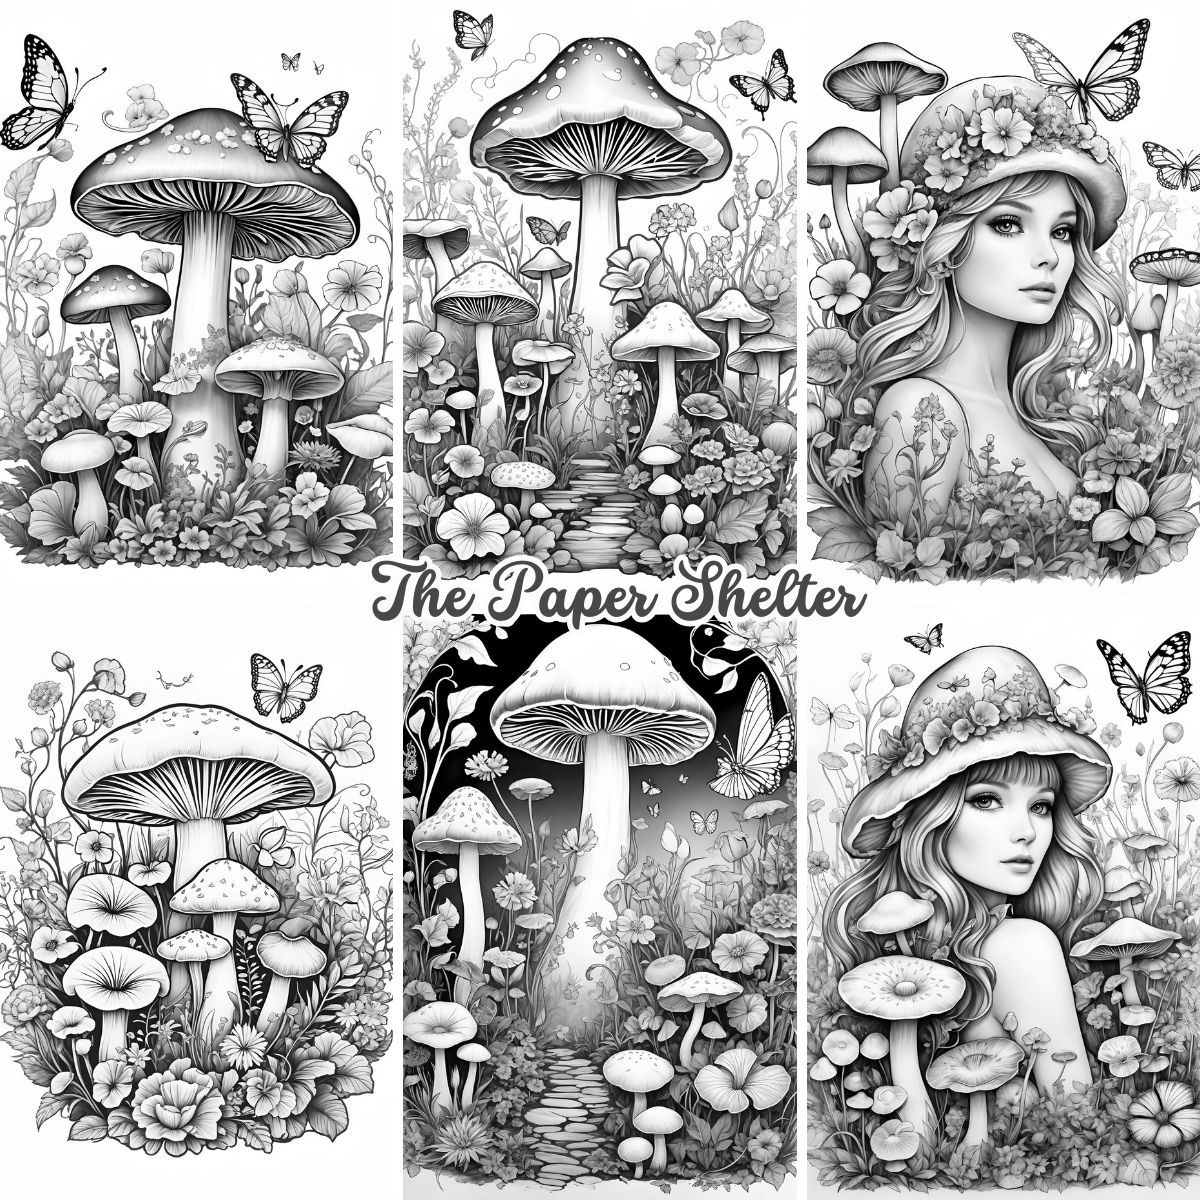 Mushroom Fantasy - Digital Coloring Book